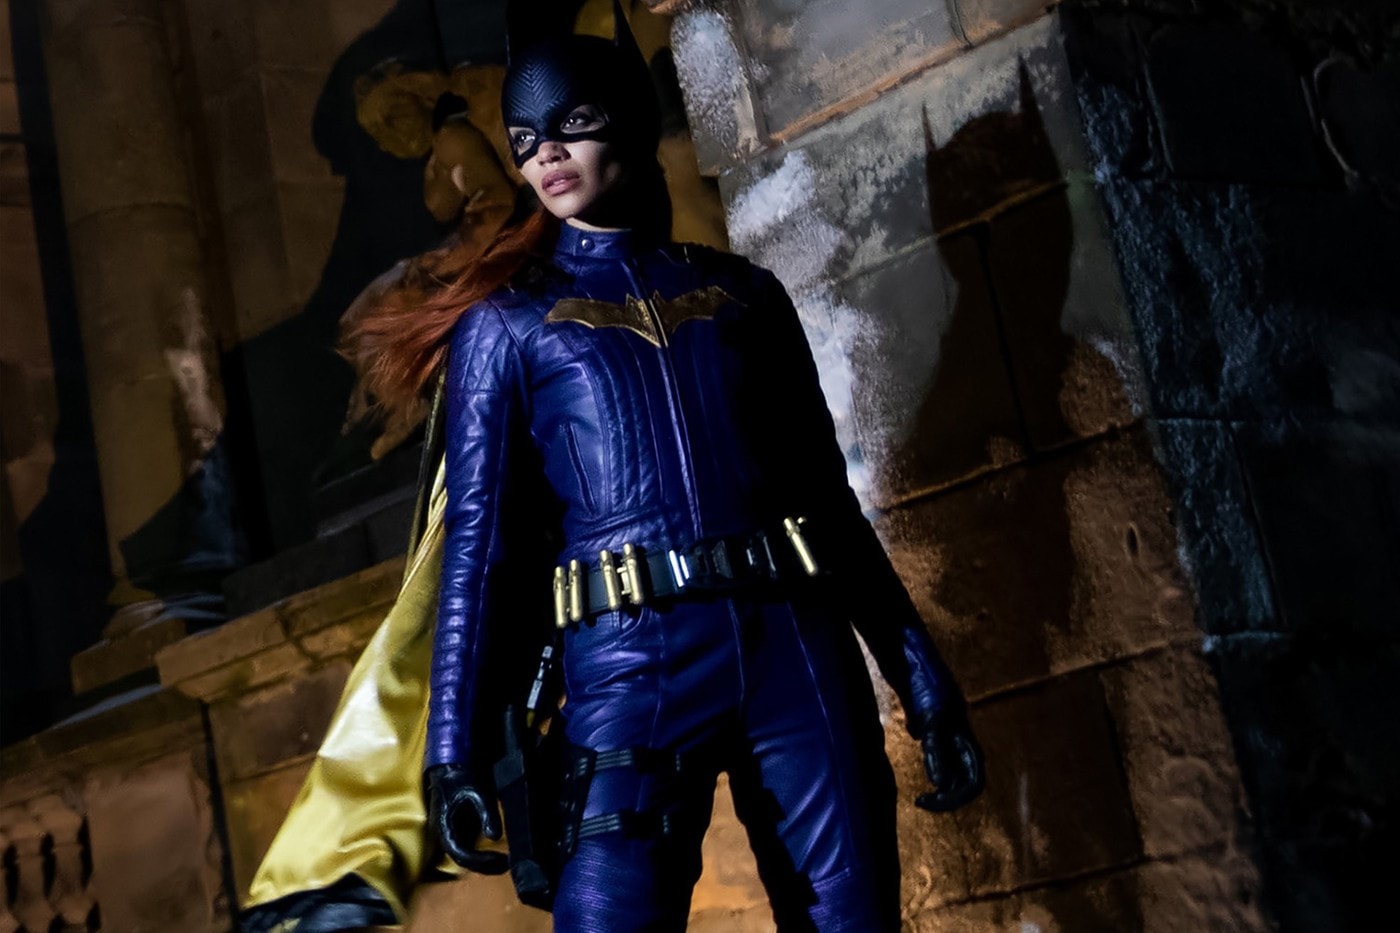 耗資 9 千萬美金製作 DC 英雄電影《蝙蝠女孩》遭官方宣佈取消發行